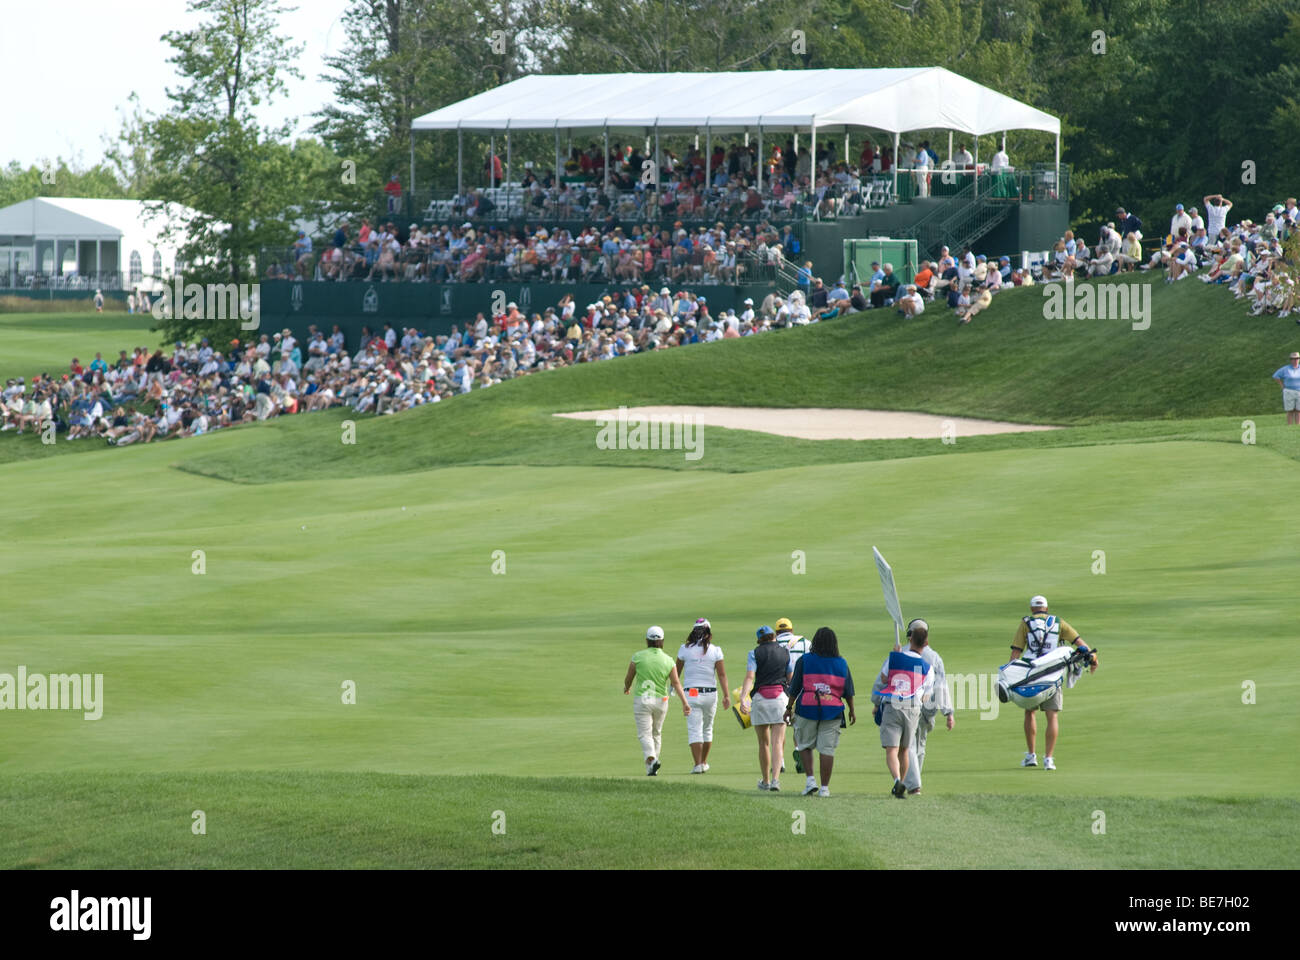 Tournoi de golf LPGA à Bulle Rock, comté de Harford MD Santé supérieure Chesapeake accepter vérifier de MCDONALD'S Banque D'Images